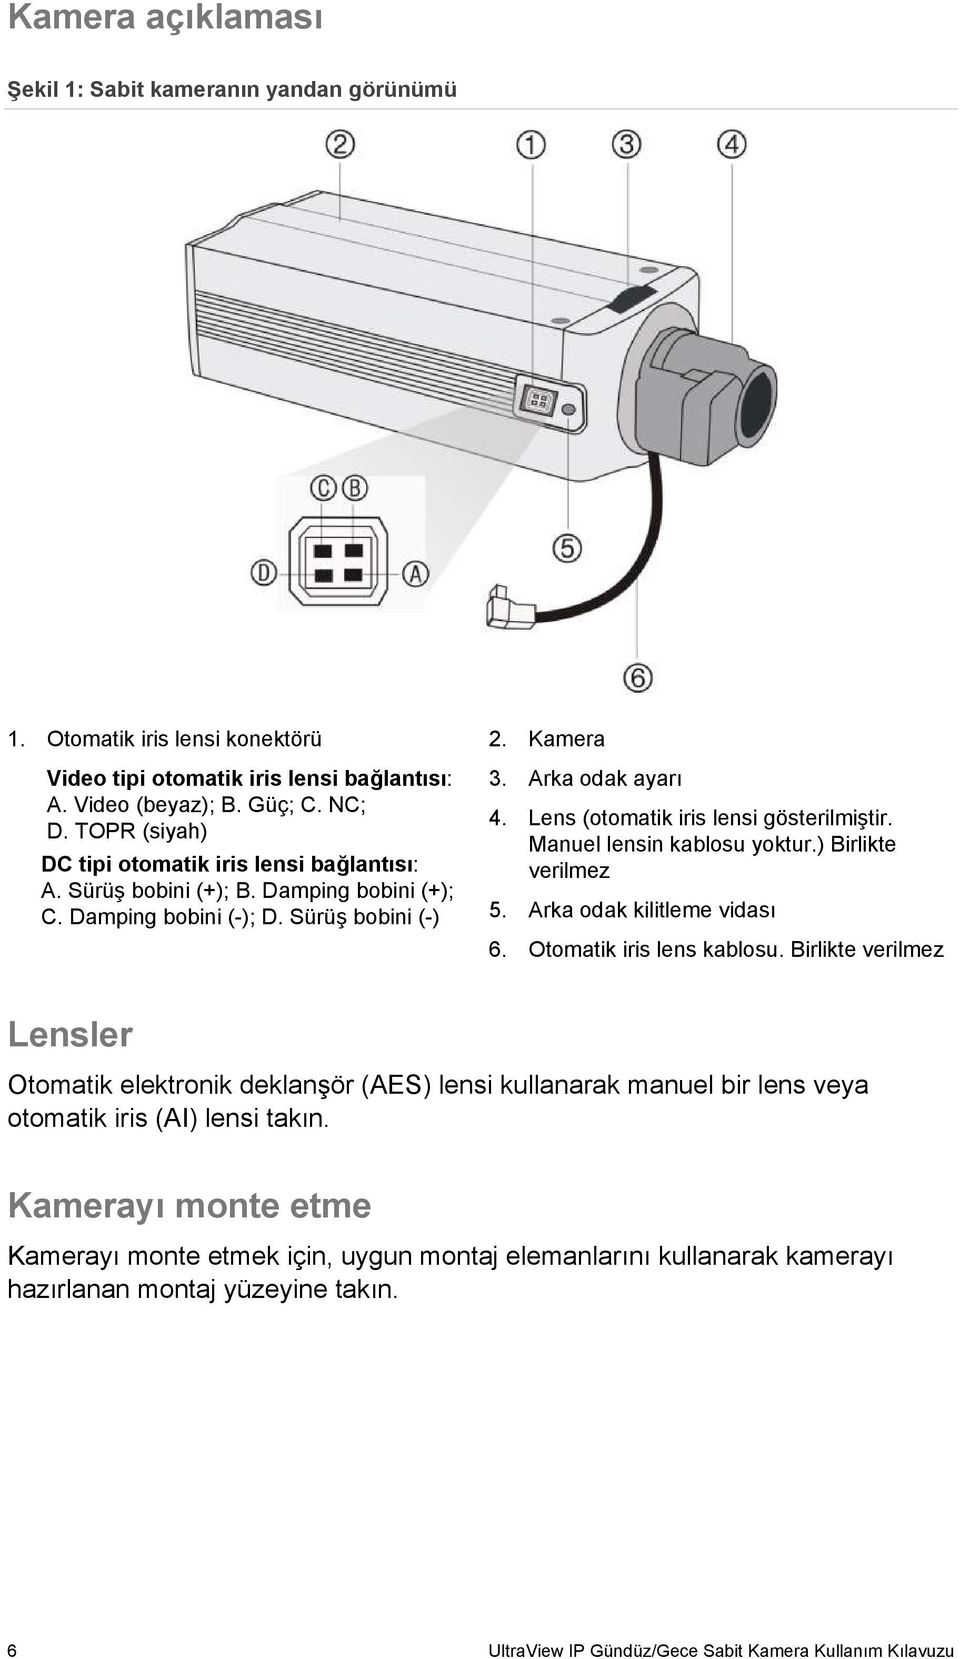 Lens (otomatik iris lensi gösterilmiştir. Manuel lensin kablosu yoktur.) Birlikte verilmez 5. Arka odak kilitleme vidası 6. Otomatik iris lens kablosu.